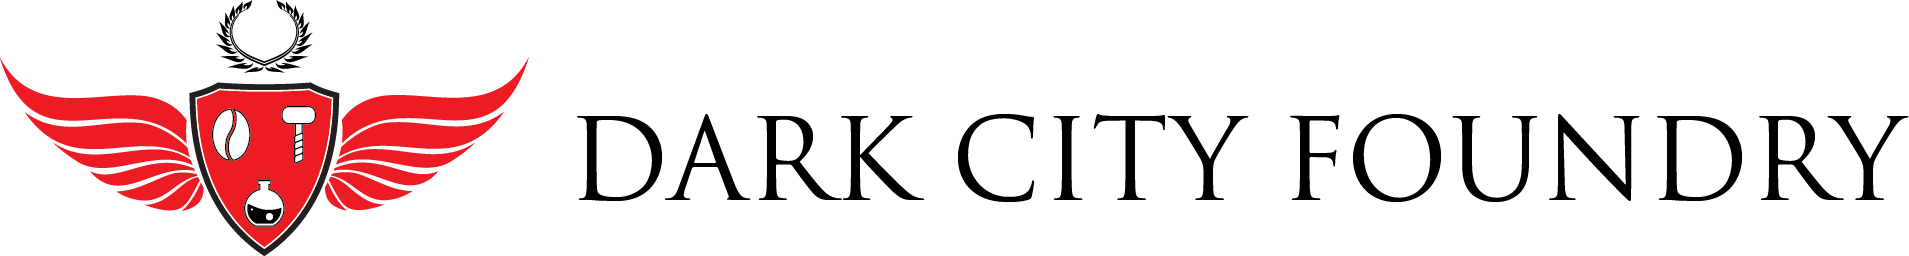 Dark City Foundry Logo